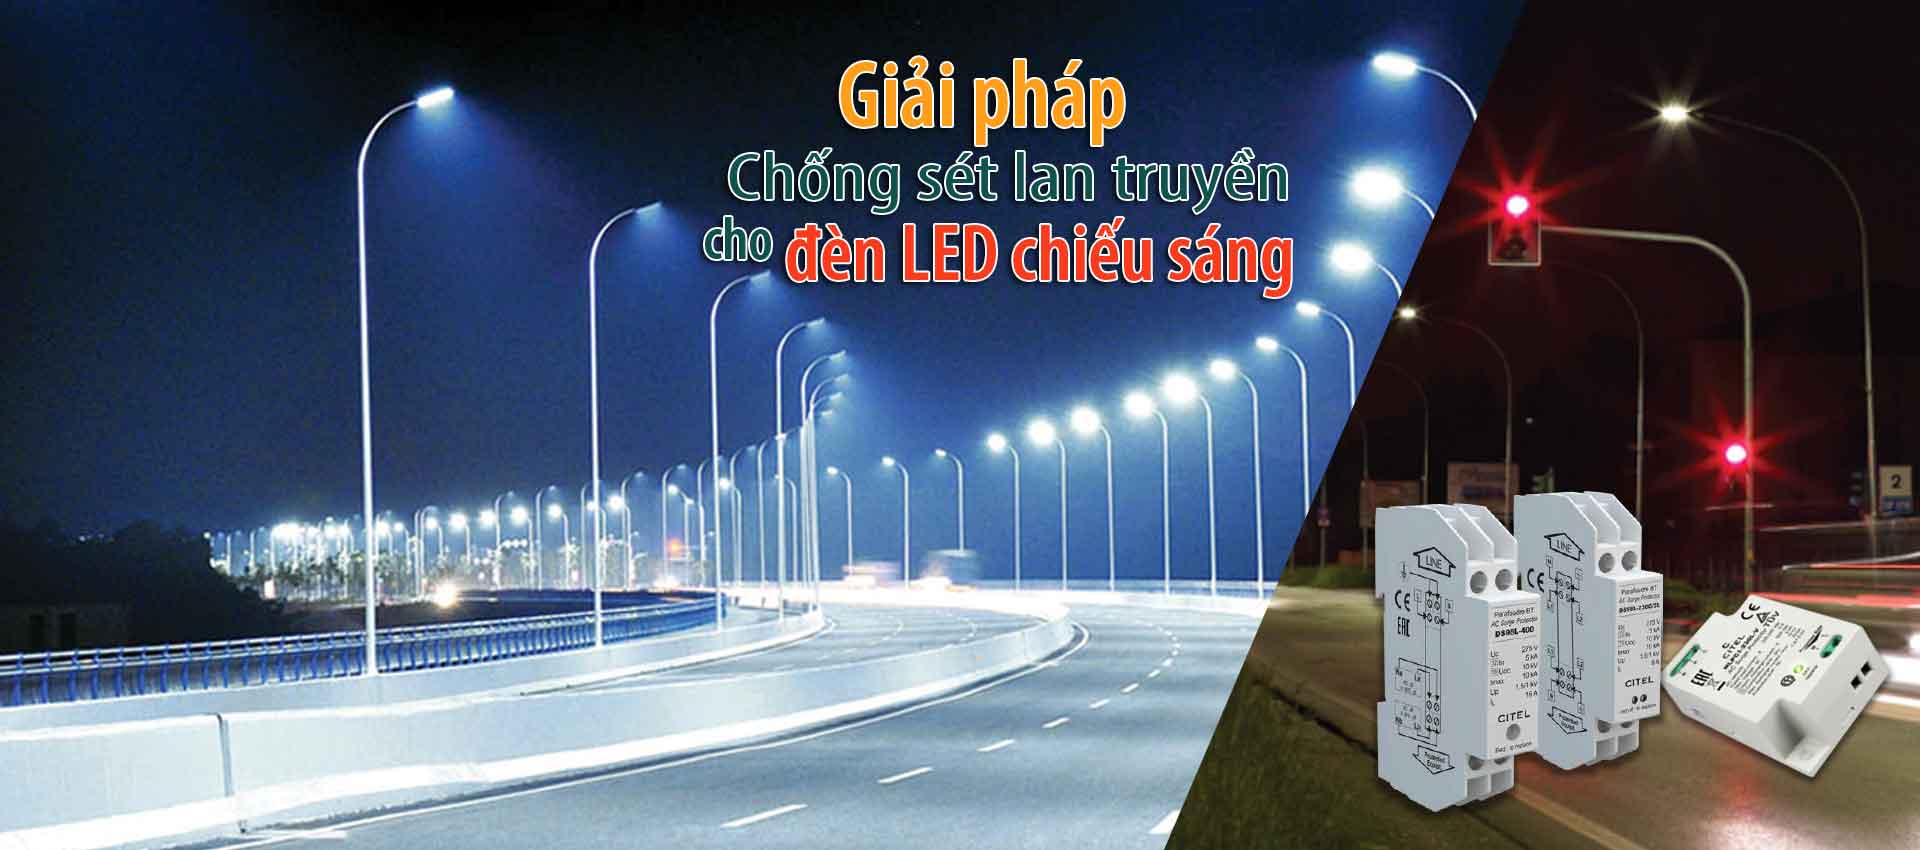 Giải pháp chống sét lan truyền cho đèn LED